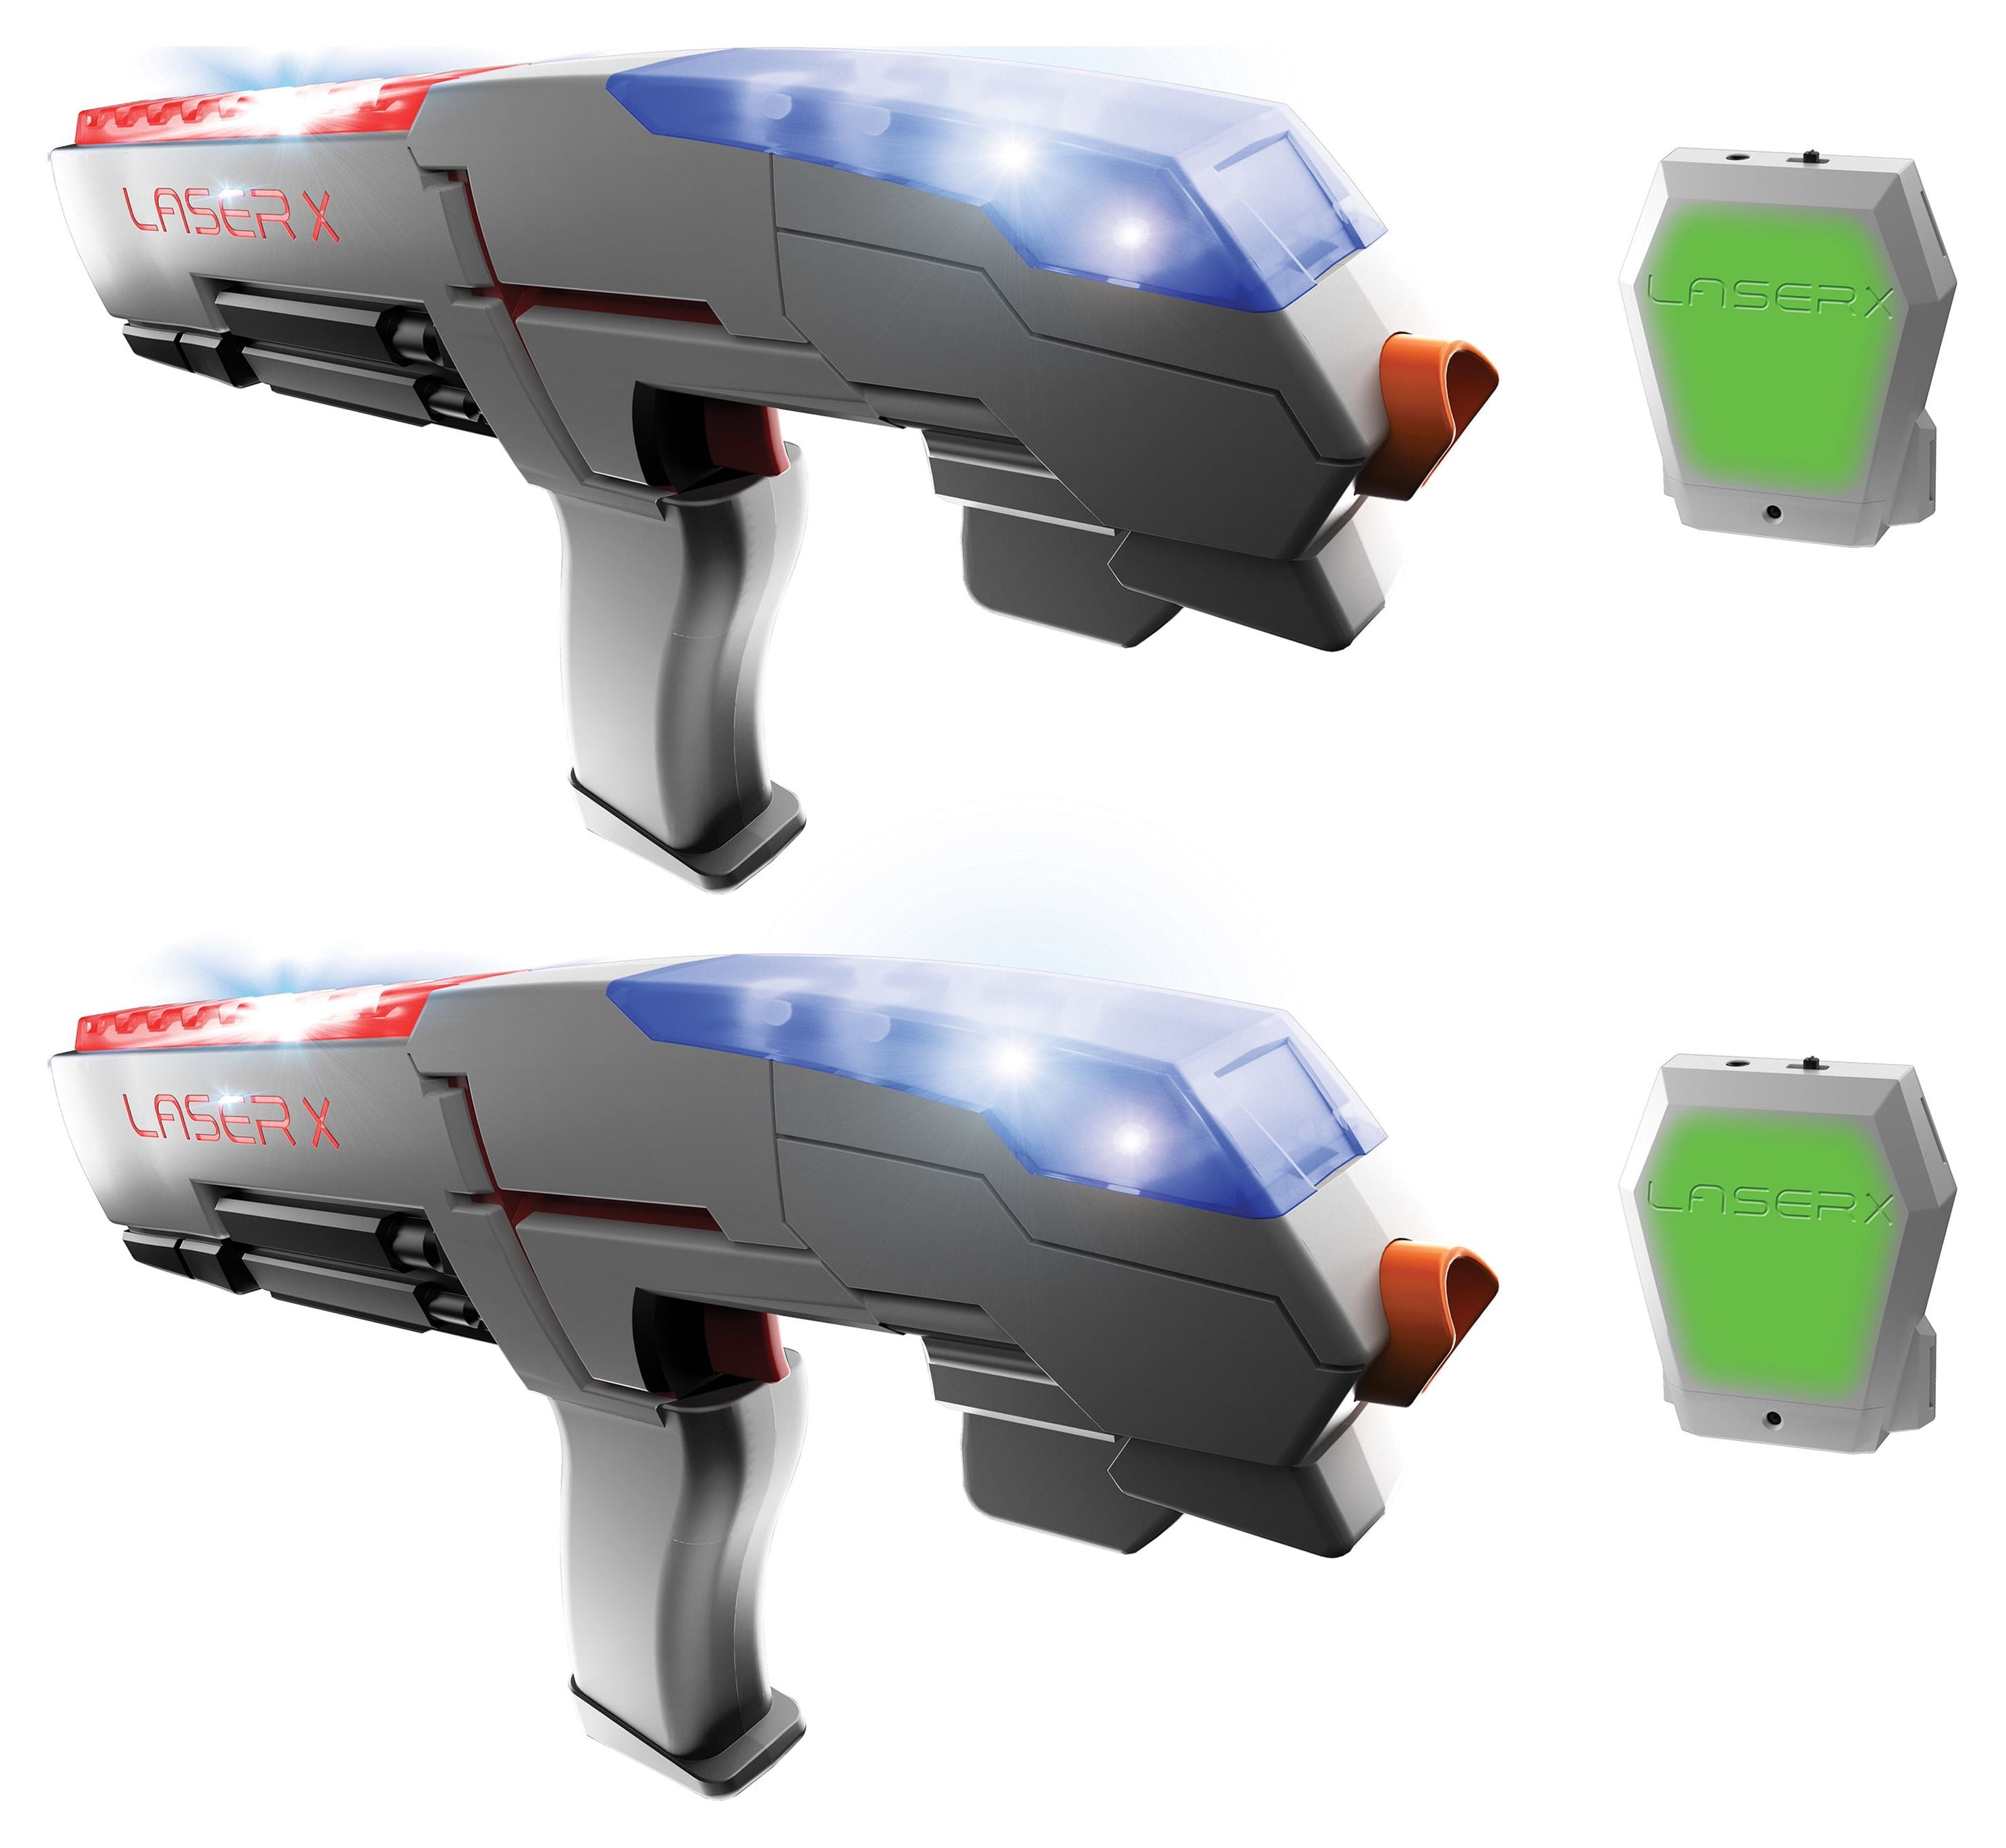 Laser X Evolution B2 Blaster 2-Player Laser Tag Set - 300ft Range, Sound  (88908)